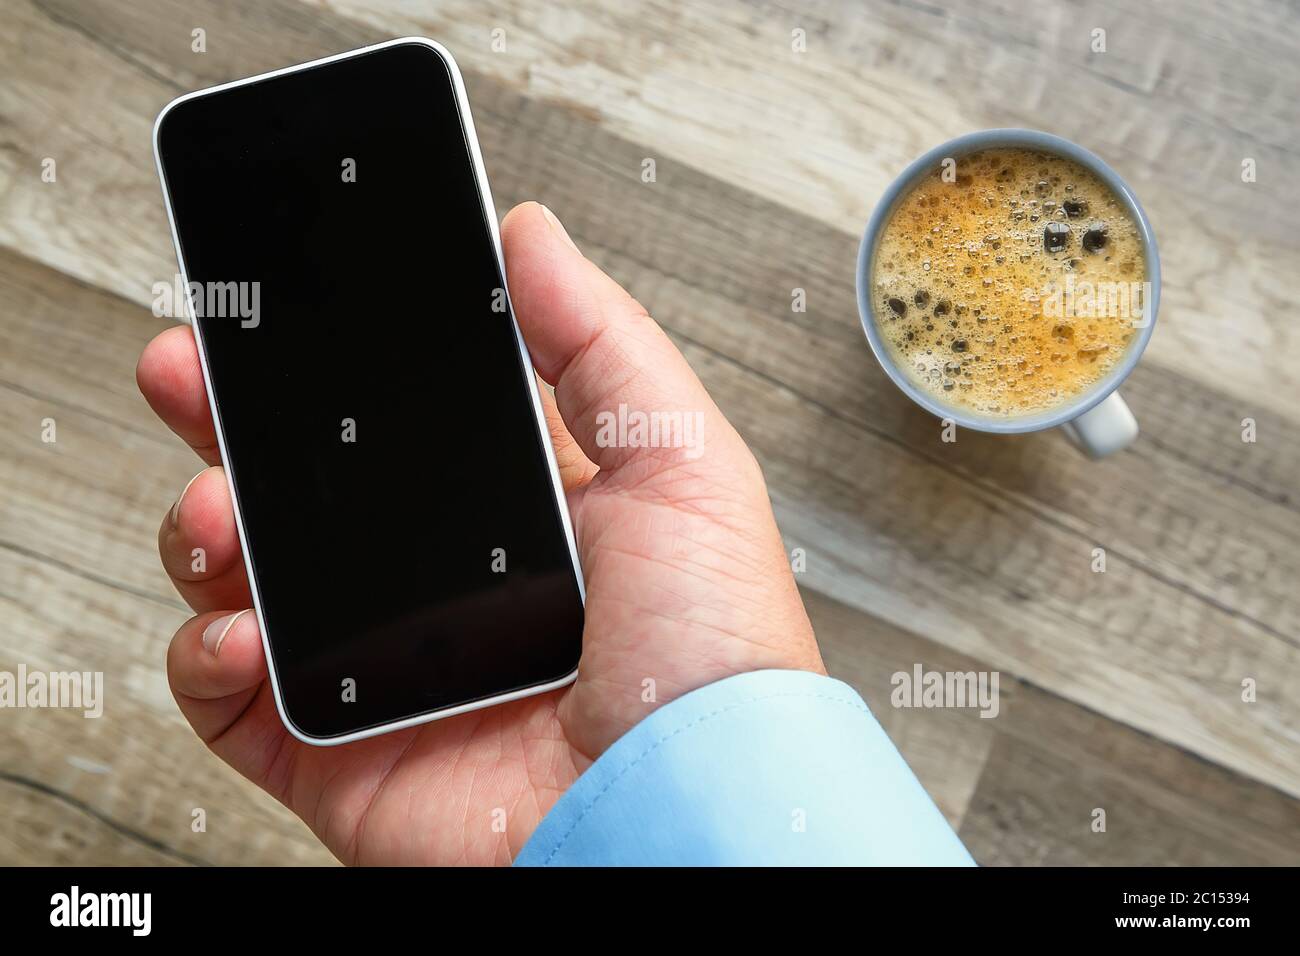 Smartphone in der Hand bei der Arbeit mit einem leeren Bereich, um ein benutzerdefiniertes Bild einzufügen. Tasse Tee und Holzboden im Hintergrund Stockfoto